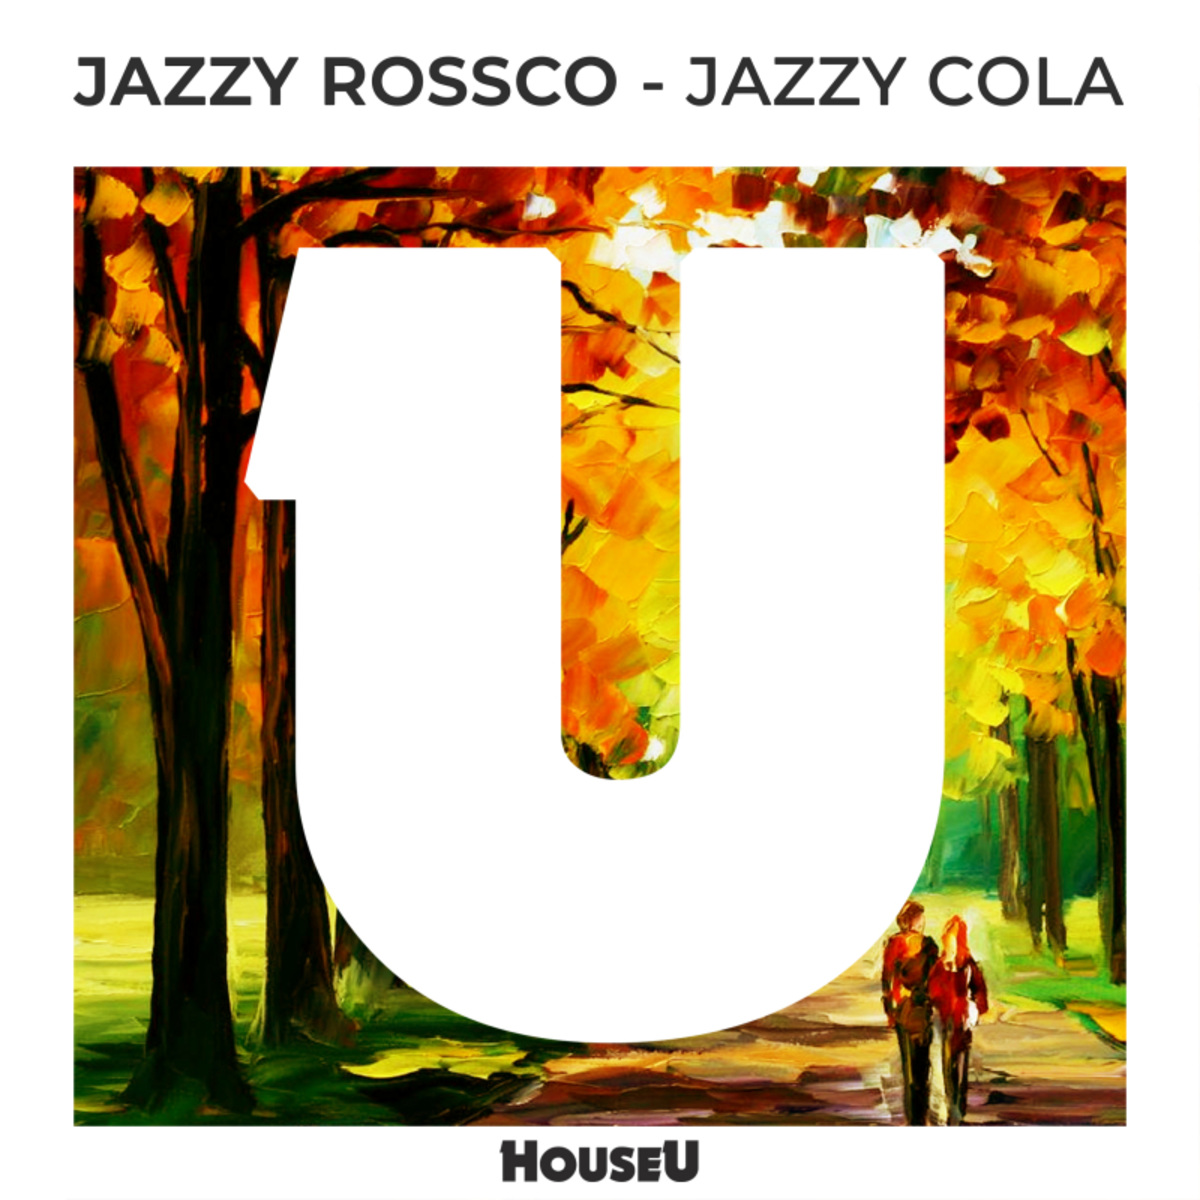 Jazzy Rossco - Jazzy Cola / HouseU